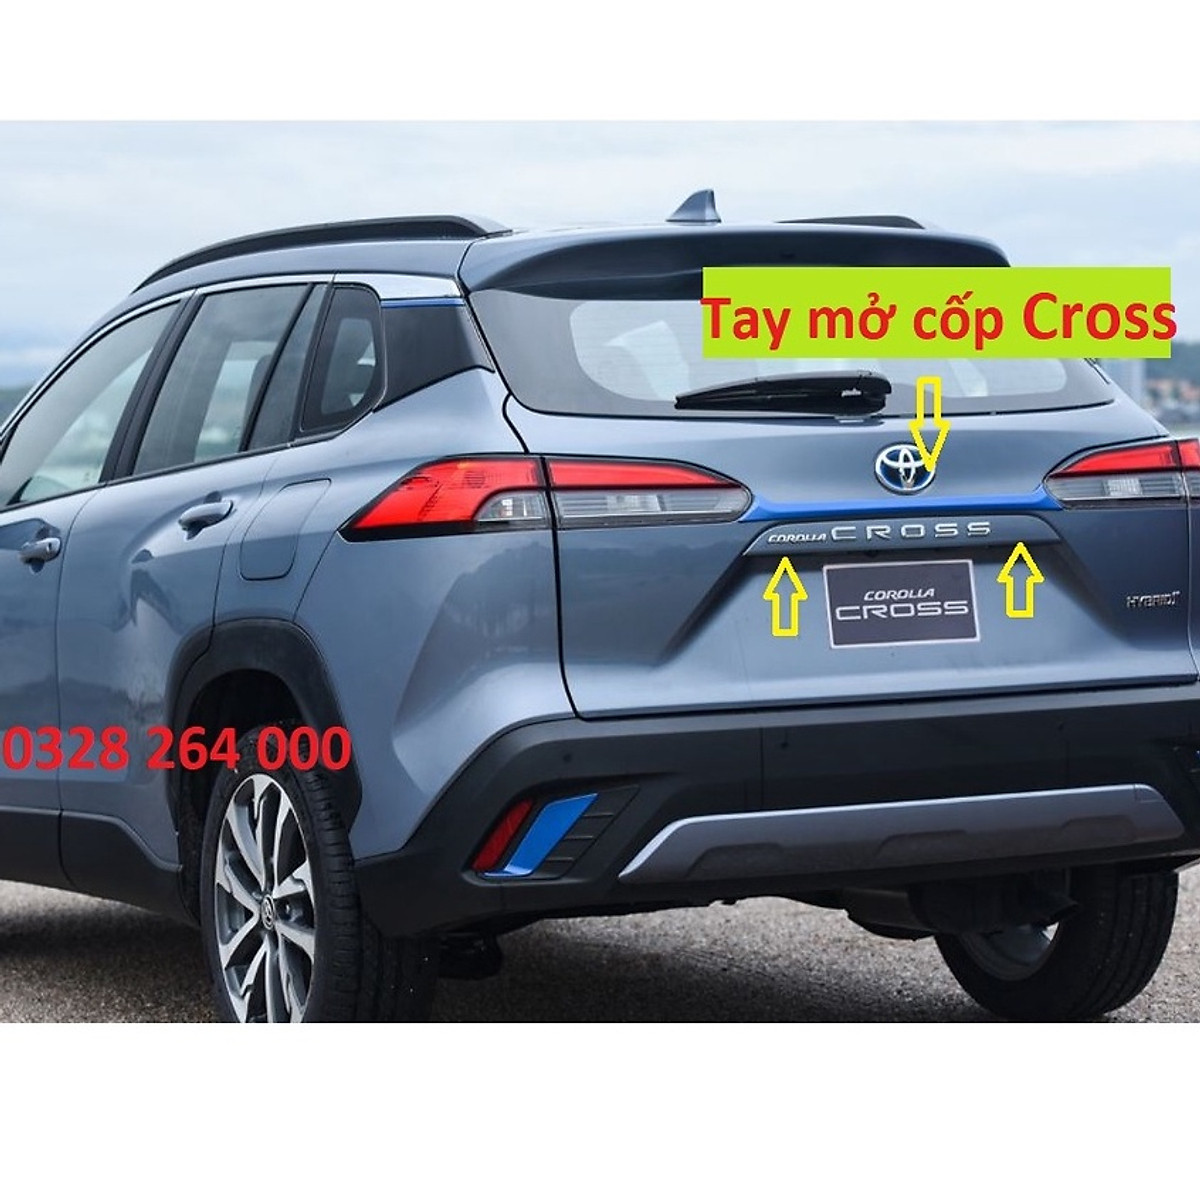 Toyota Corolla Cross 2020 đặt hàng tại Toyota